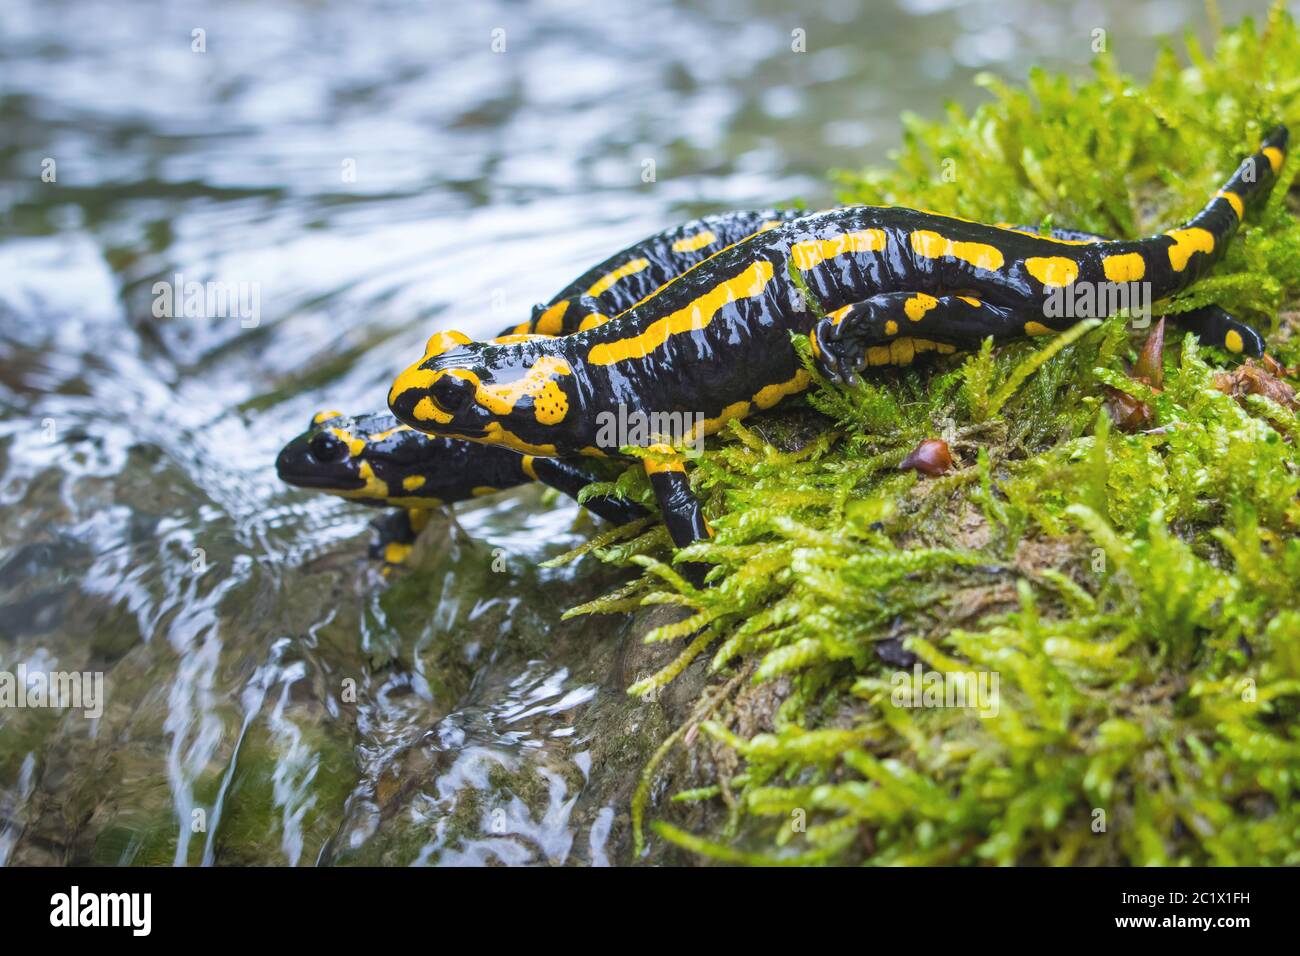 Salamander Amphibian Stockfotos und -bilder Kaufen - Seite 7 - Alamy